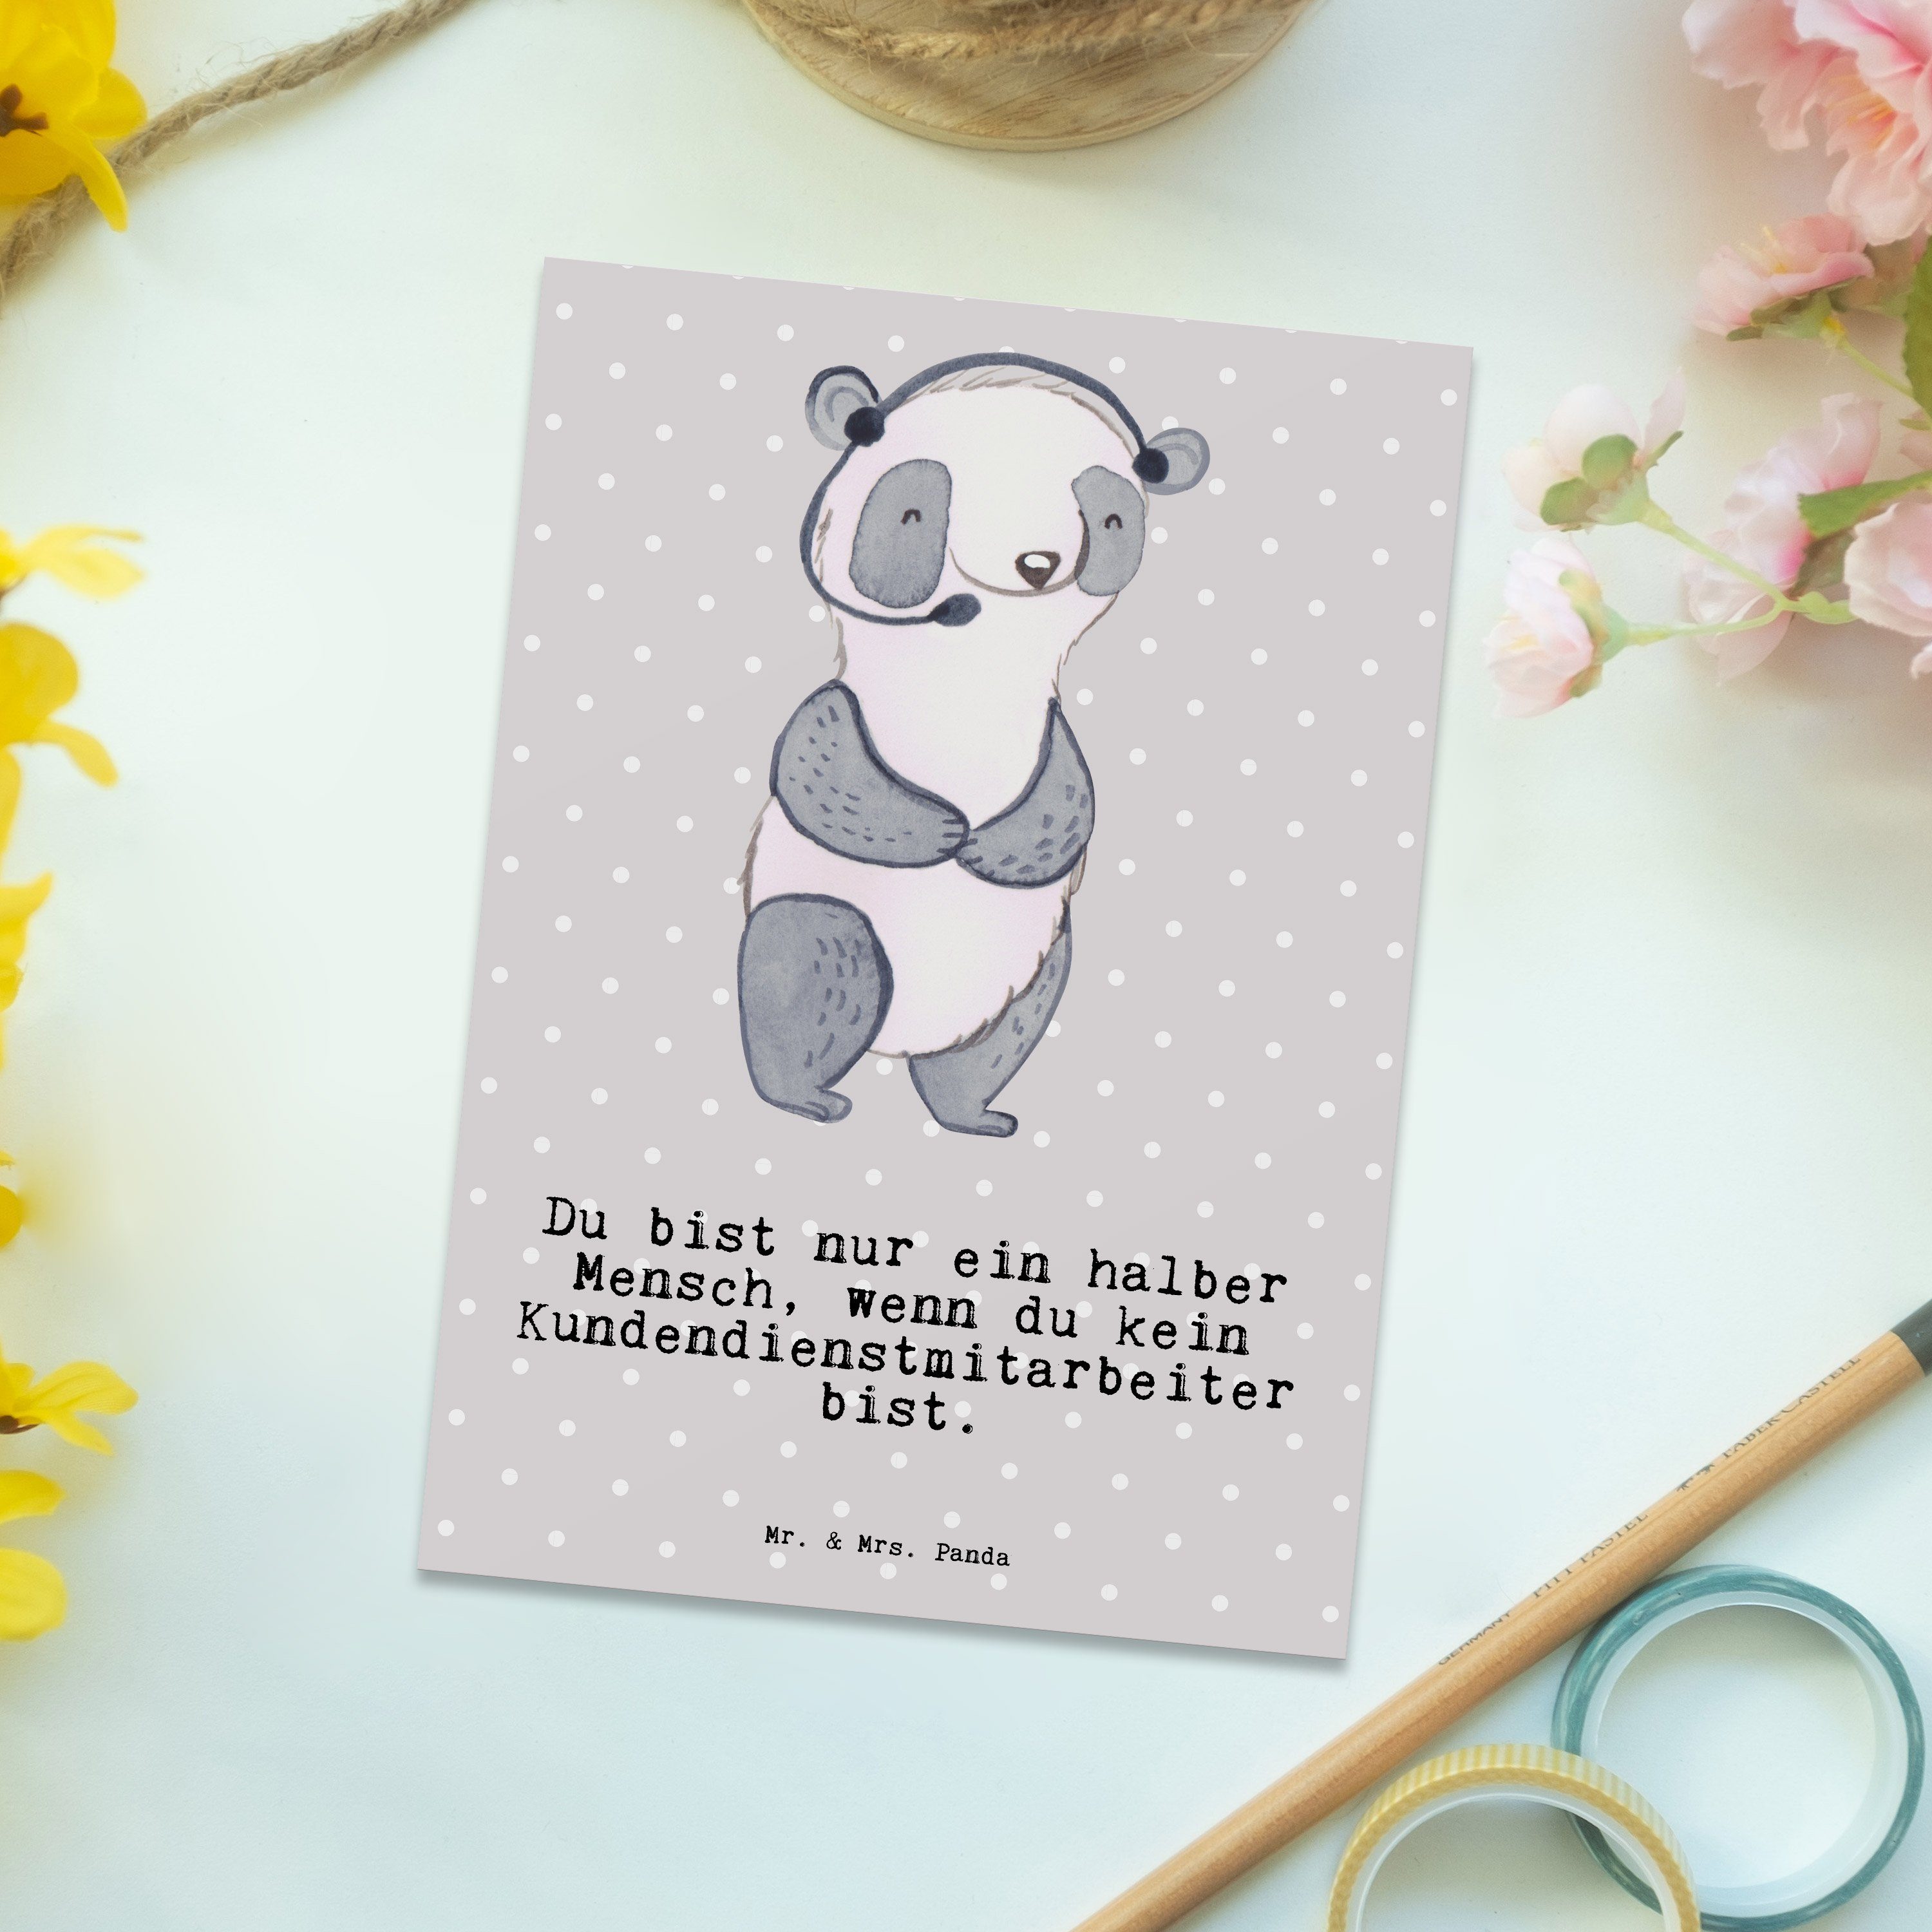 Mr. & Mrs. Panda Postkarte Kundendienstmitarbeiter mit Herz - Grau Pastell - Geschenk, Dankeskar